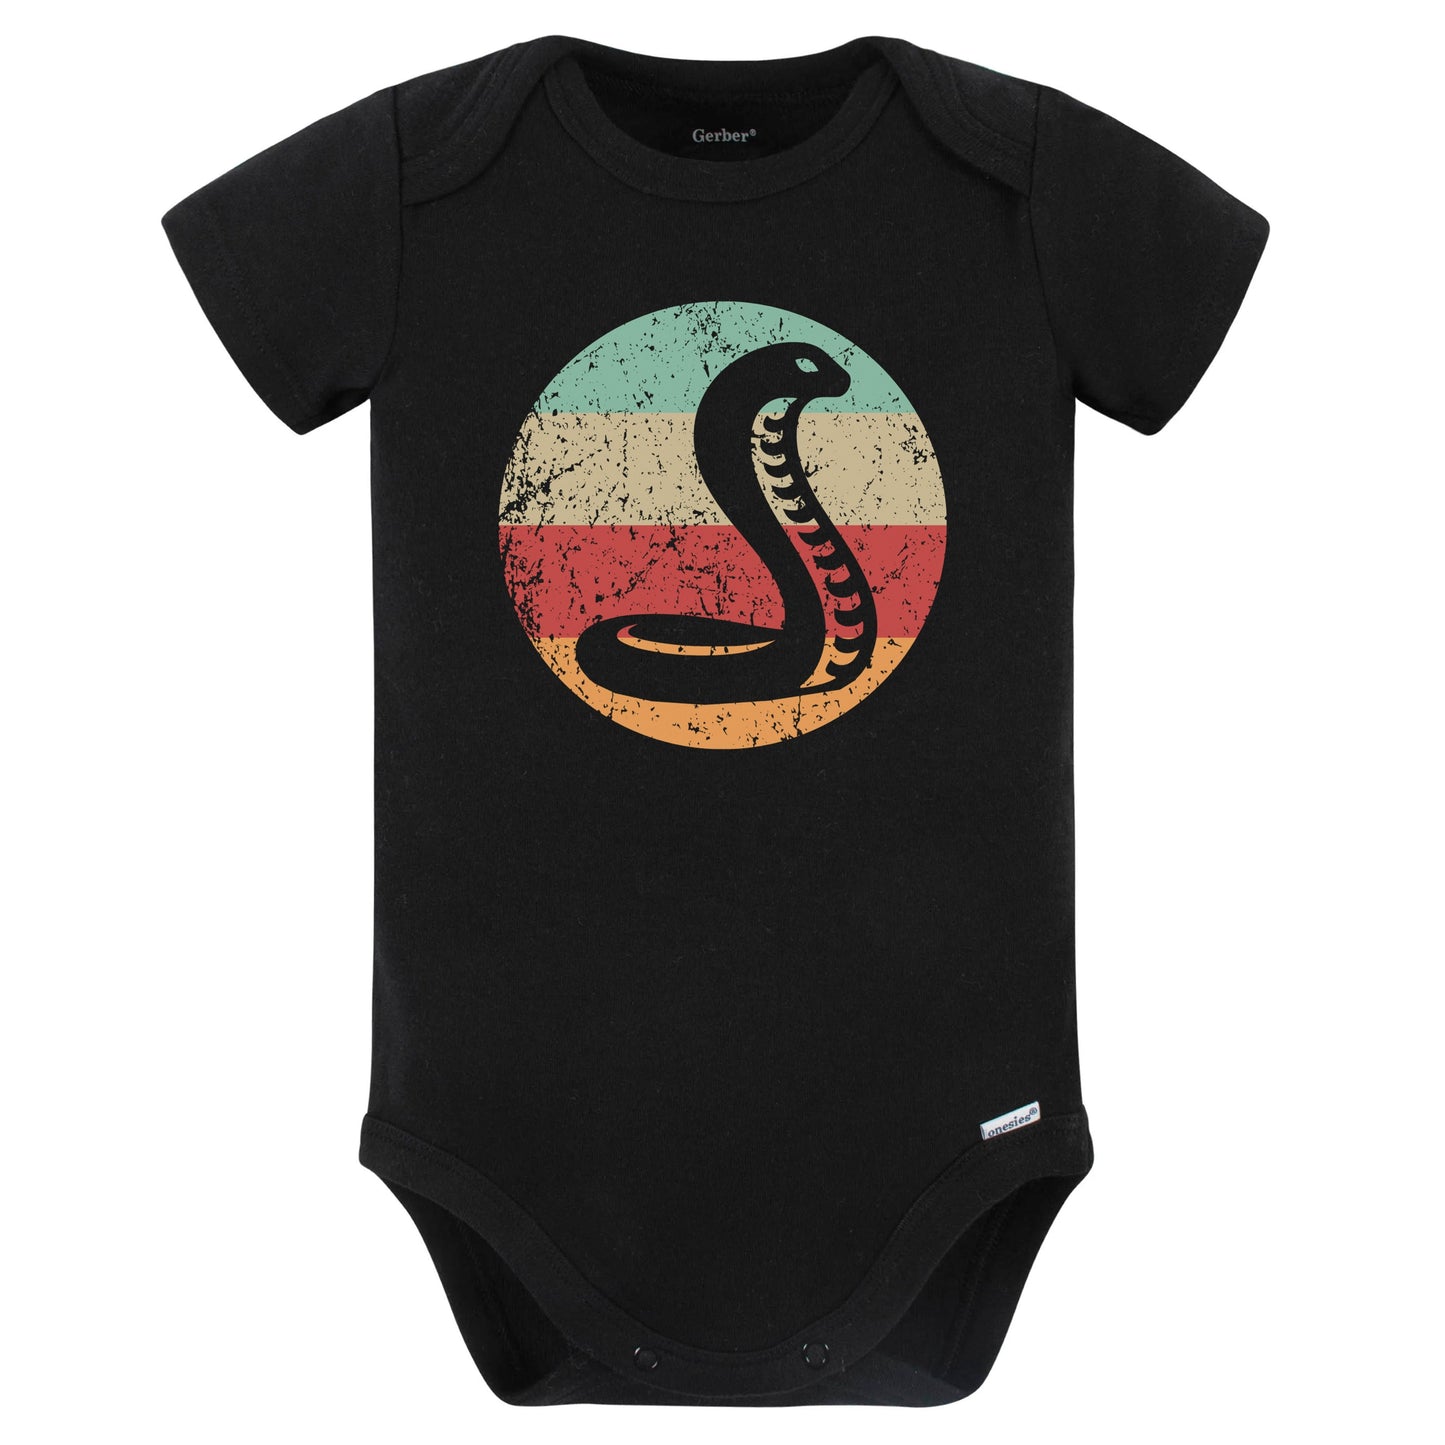 Retro Cobra Snake Vintage Style Wild Animal Baby Bodysuit (Black)